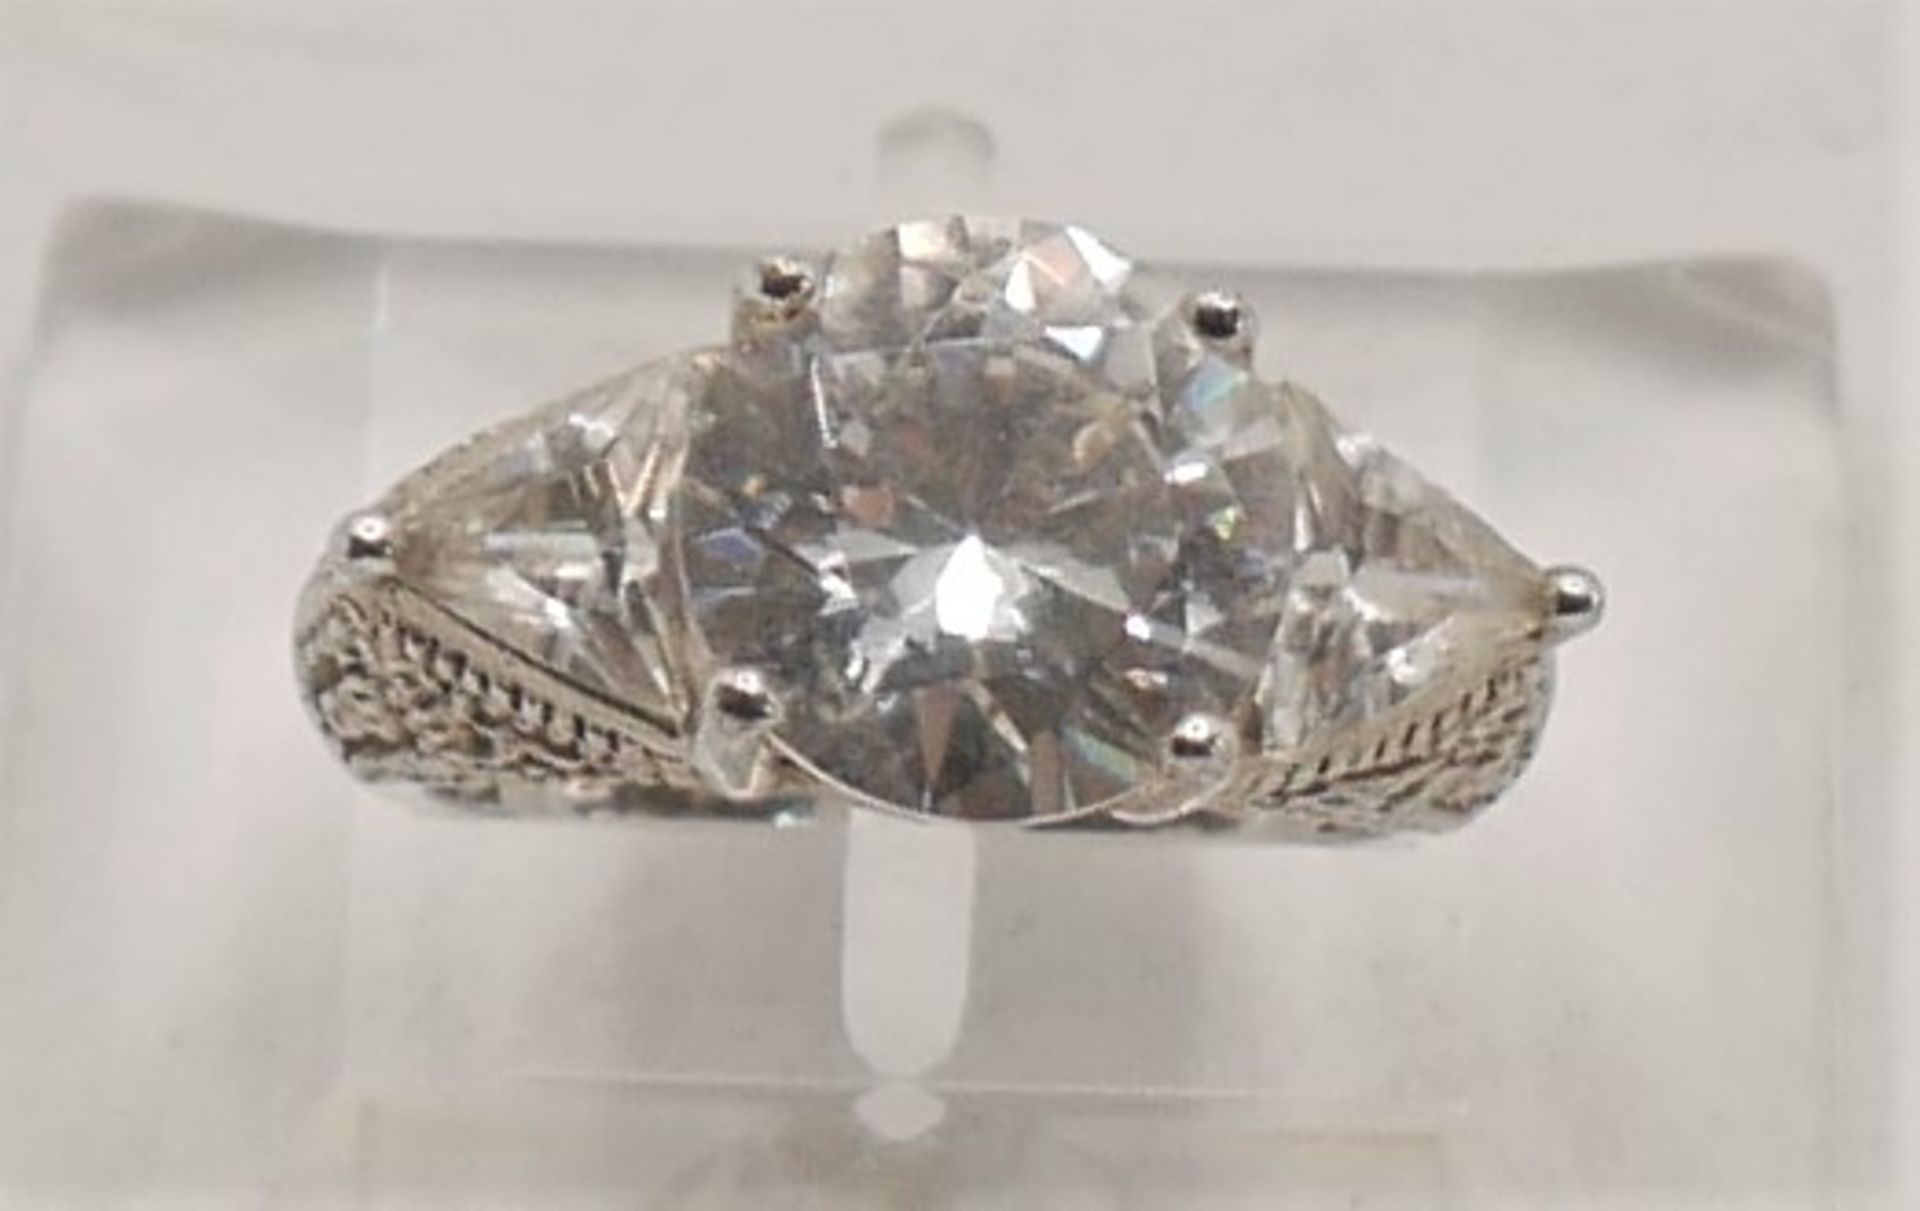 Damenring 925er Silber gepunzt, besetzt mit großem Glasstein, Ringgröße 51. - Image 2 of 2